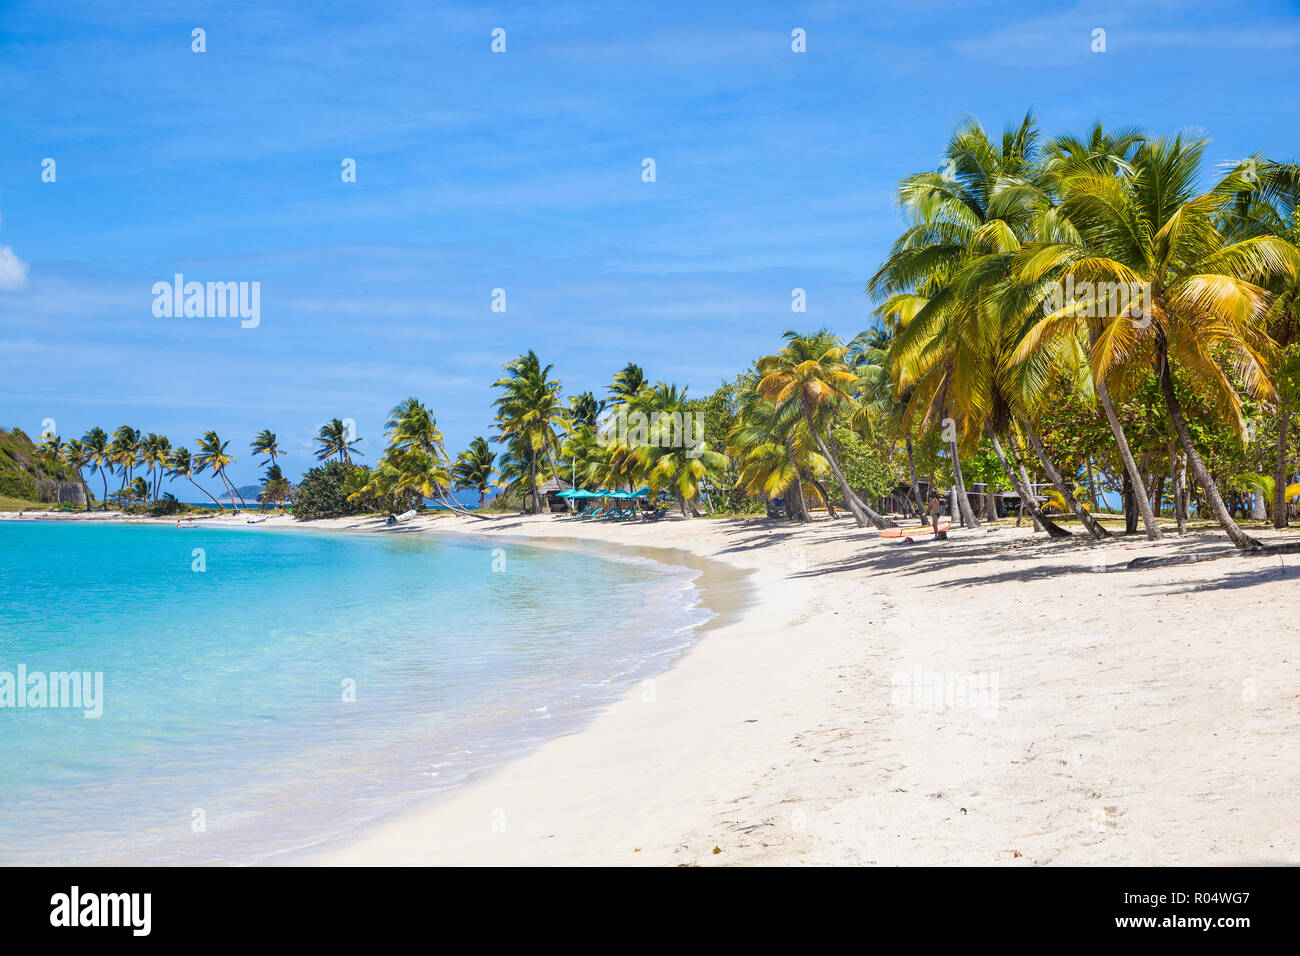 Saltwhistle Bay, Mayreau, den Grenadinen, St. Vincent und die Grenadinen, Karibik, Karibik, Zentral- und Lateinamerika Stockfoto